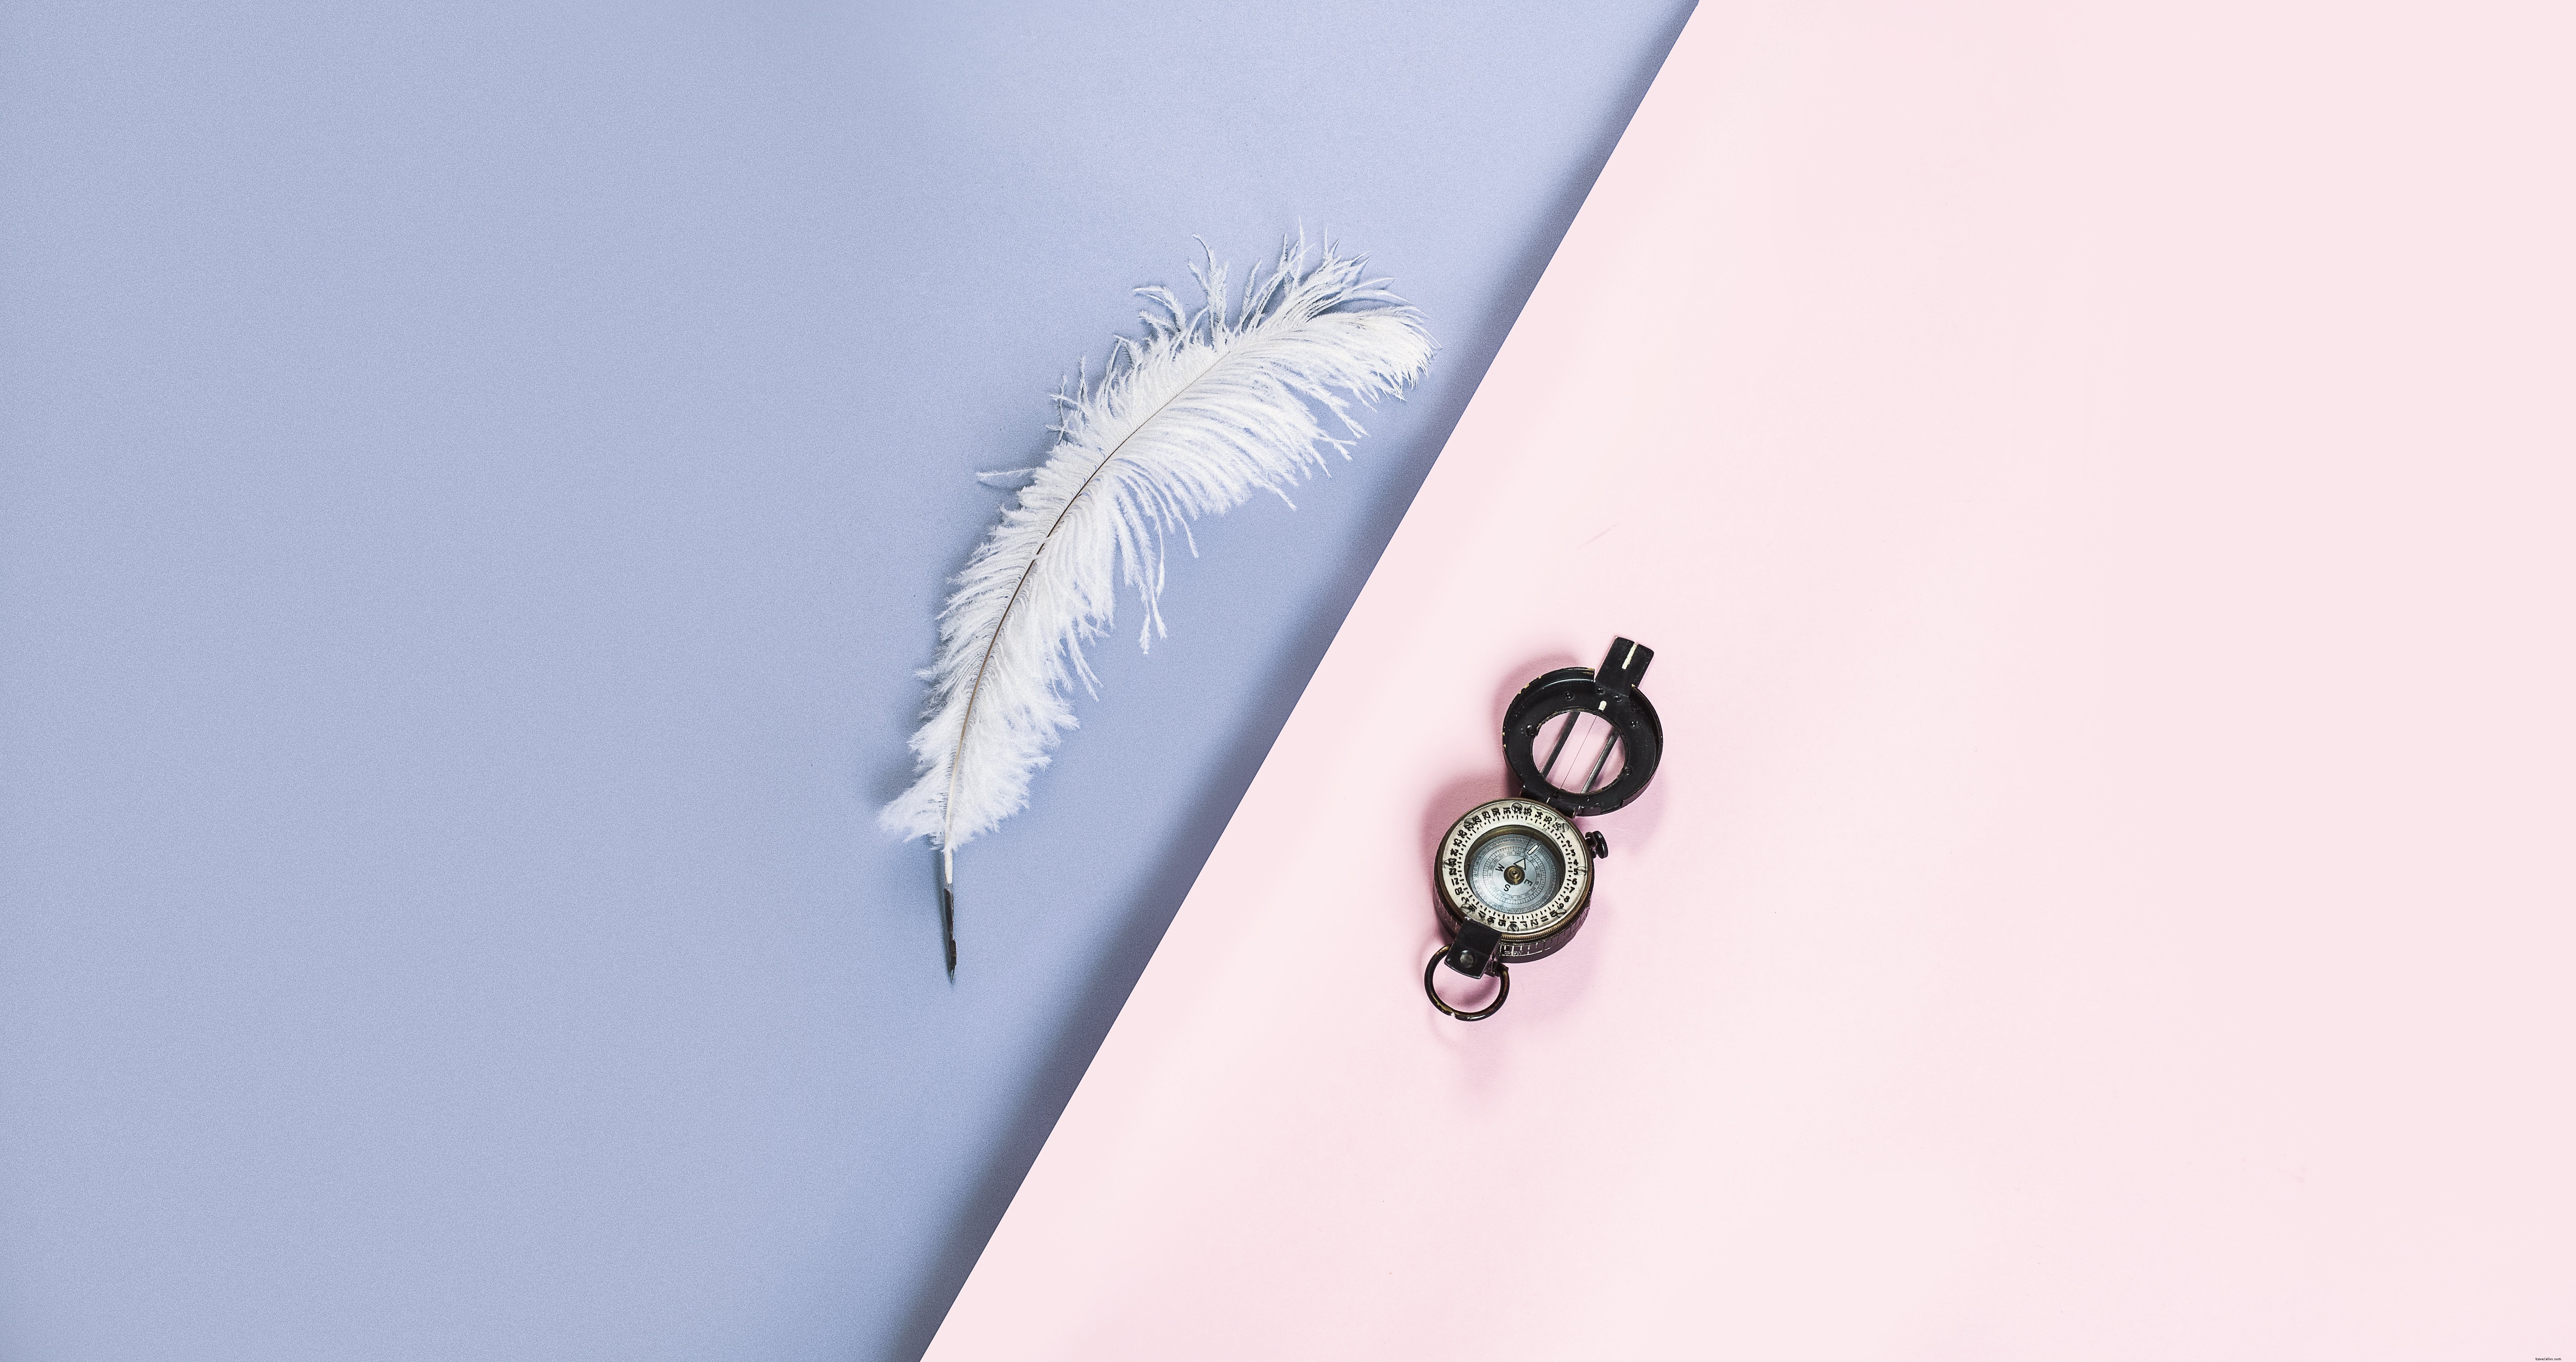 Una pluma blanca y una brújula en una foto rosa y morada